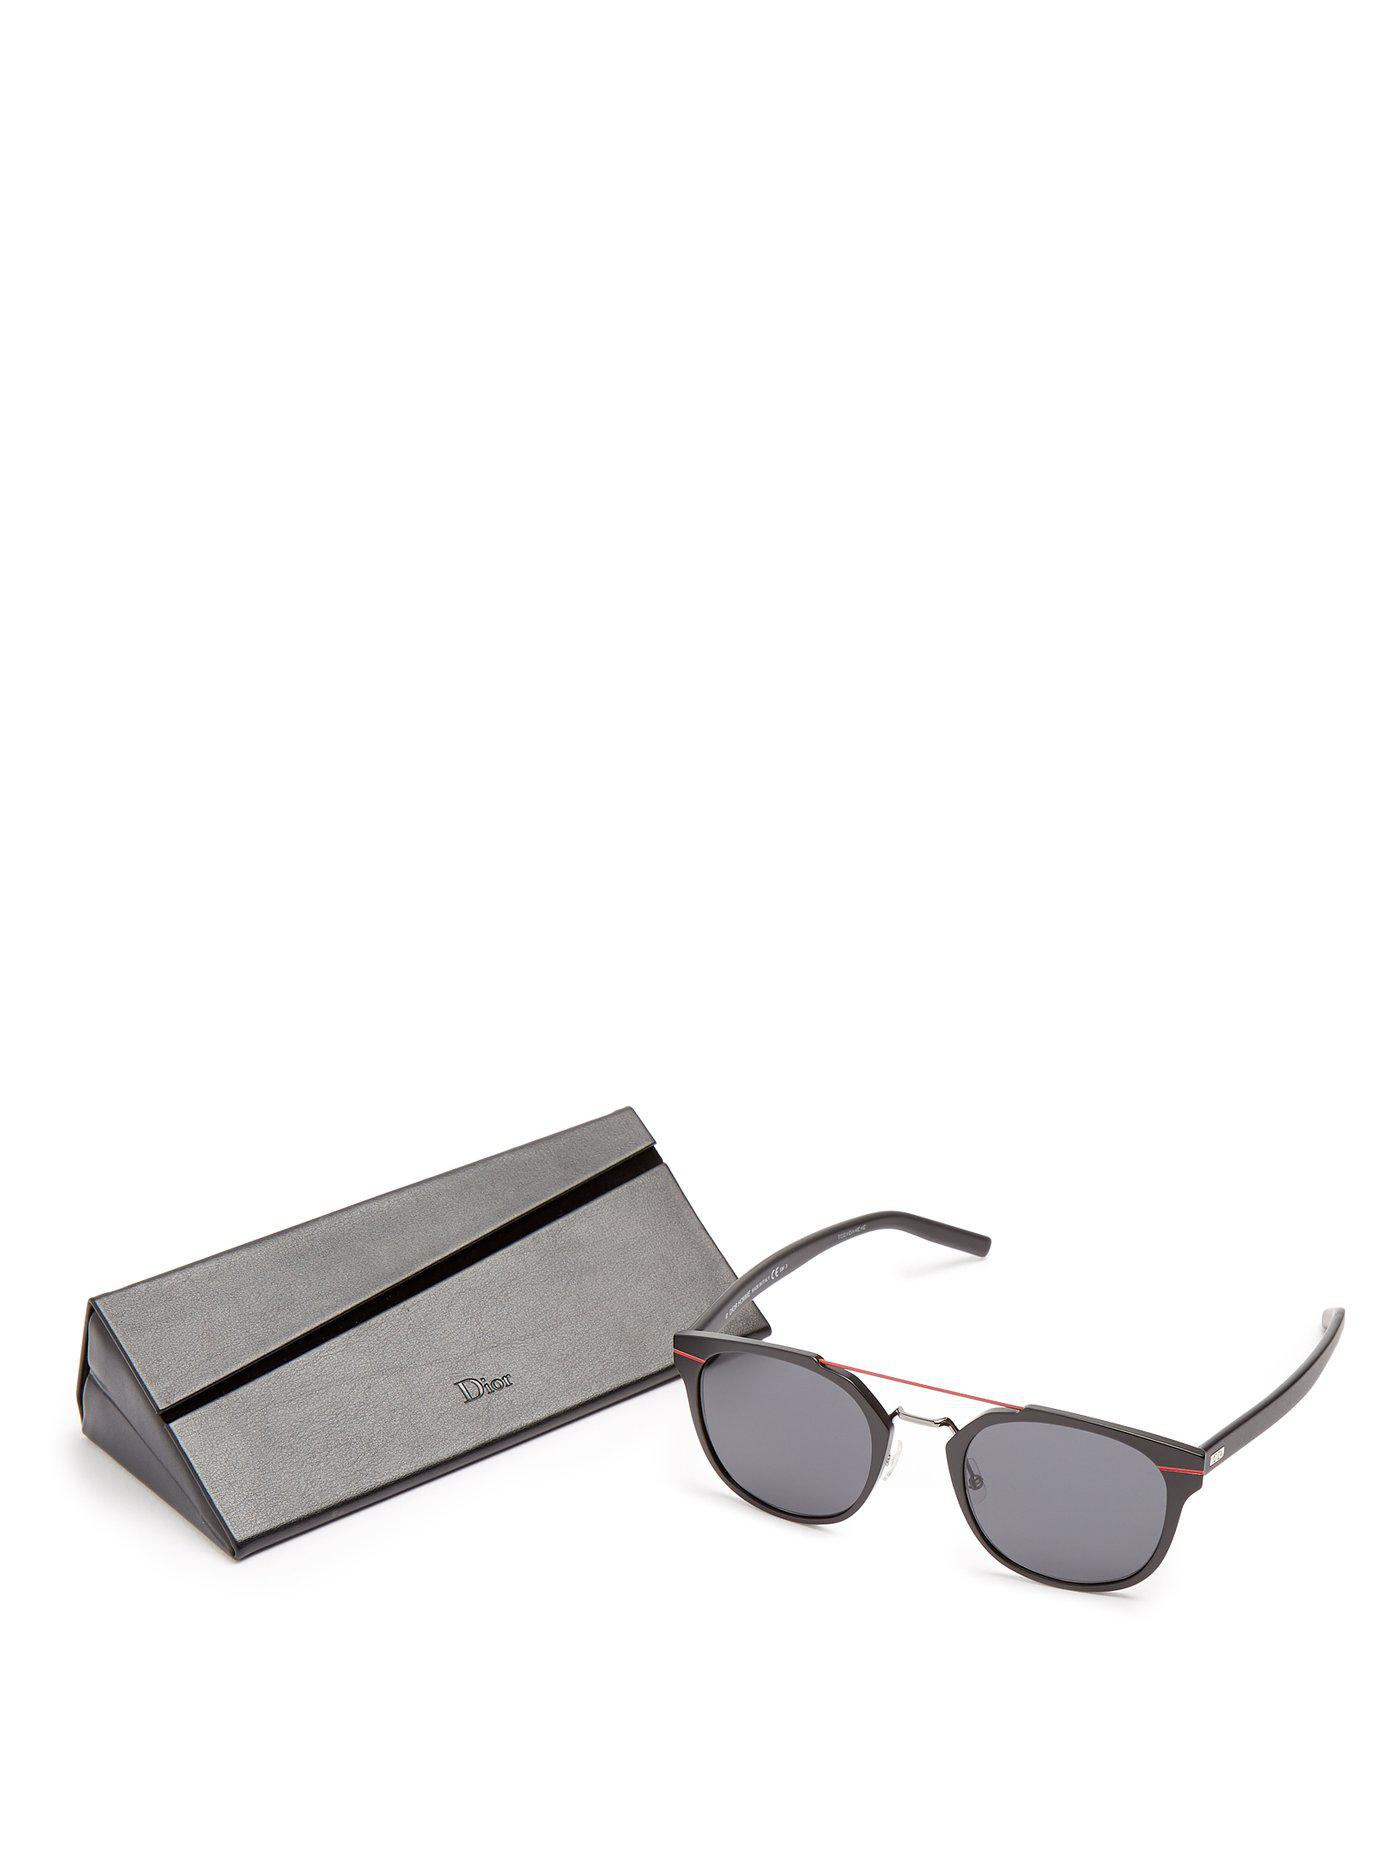 Dior Homme Al13.5 Aluminium Sunglasses in Black for Men - Lyst